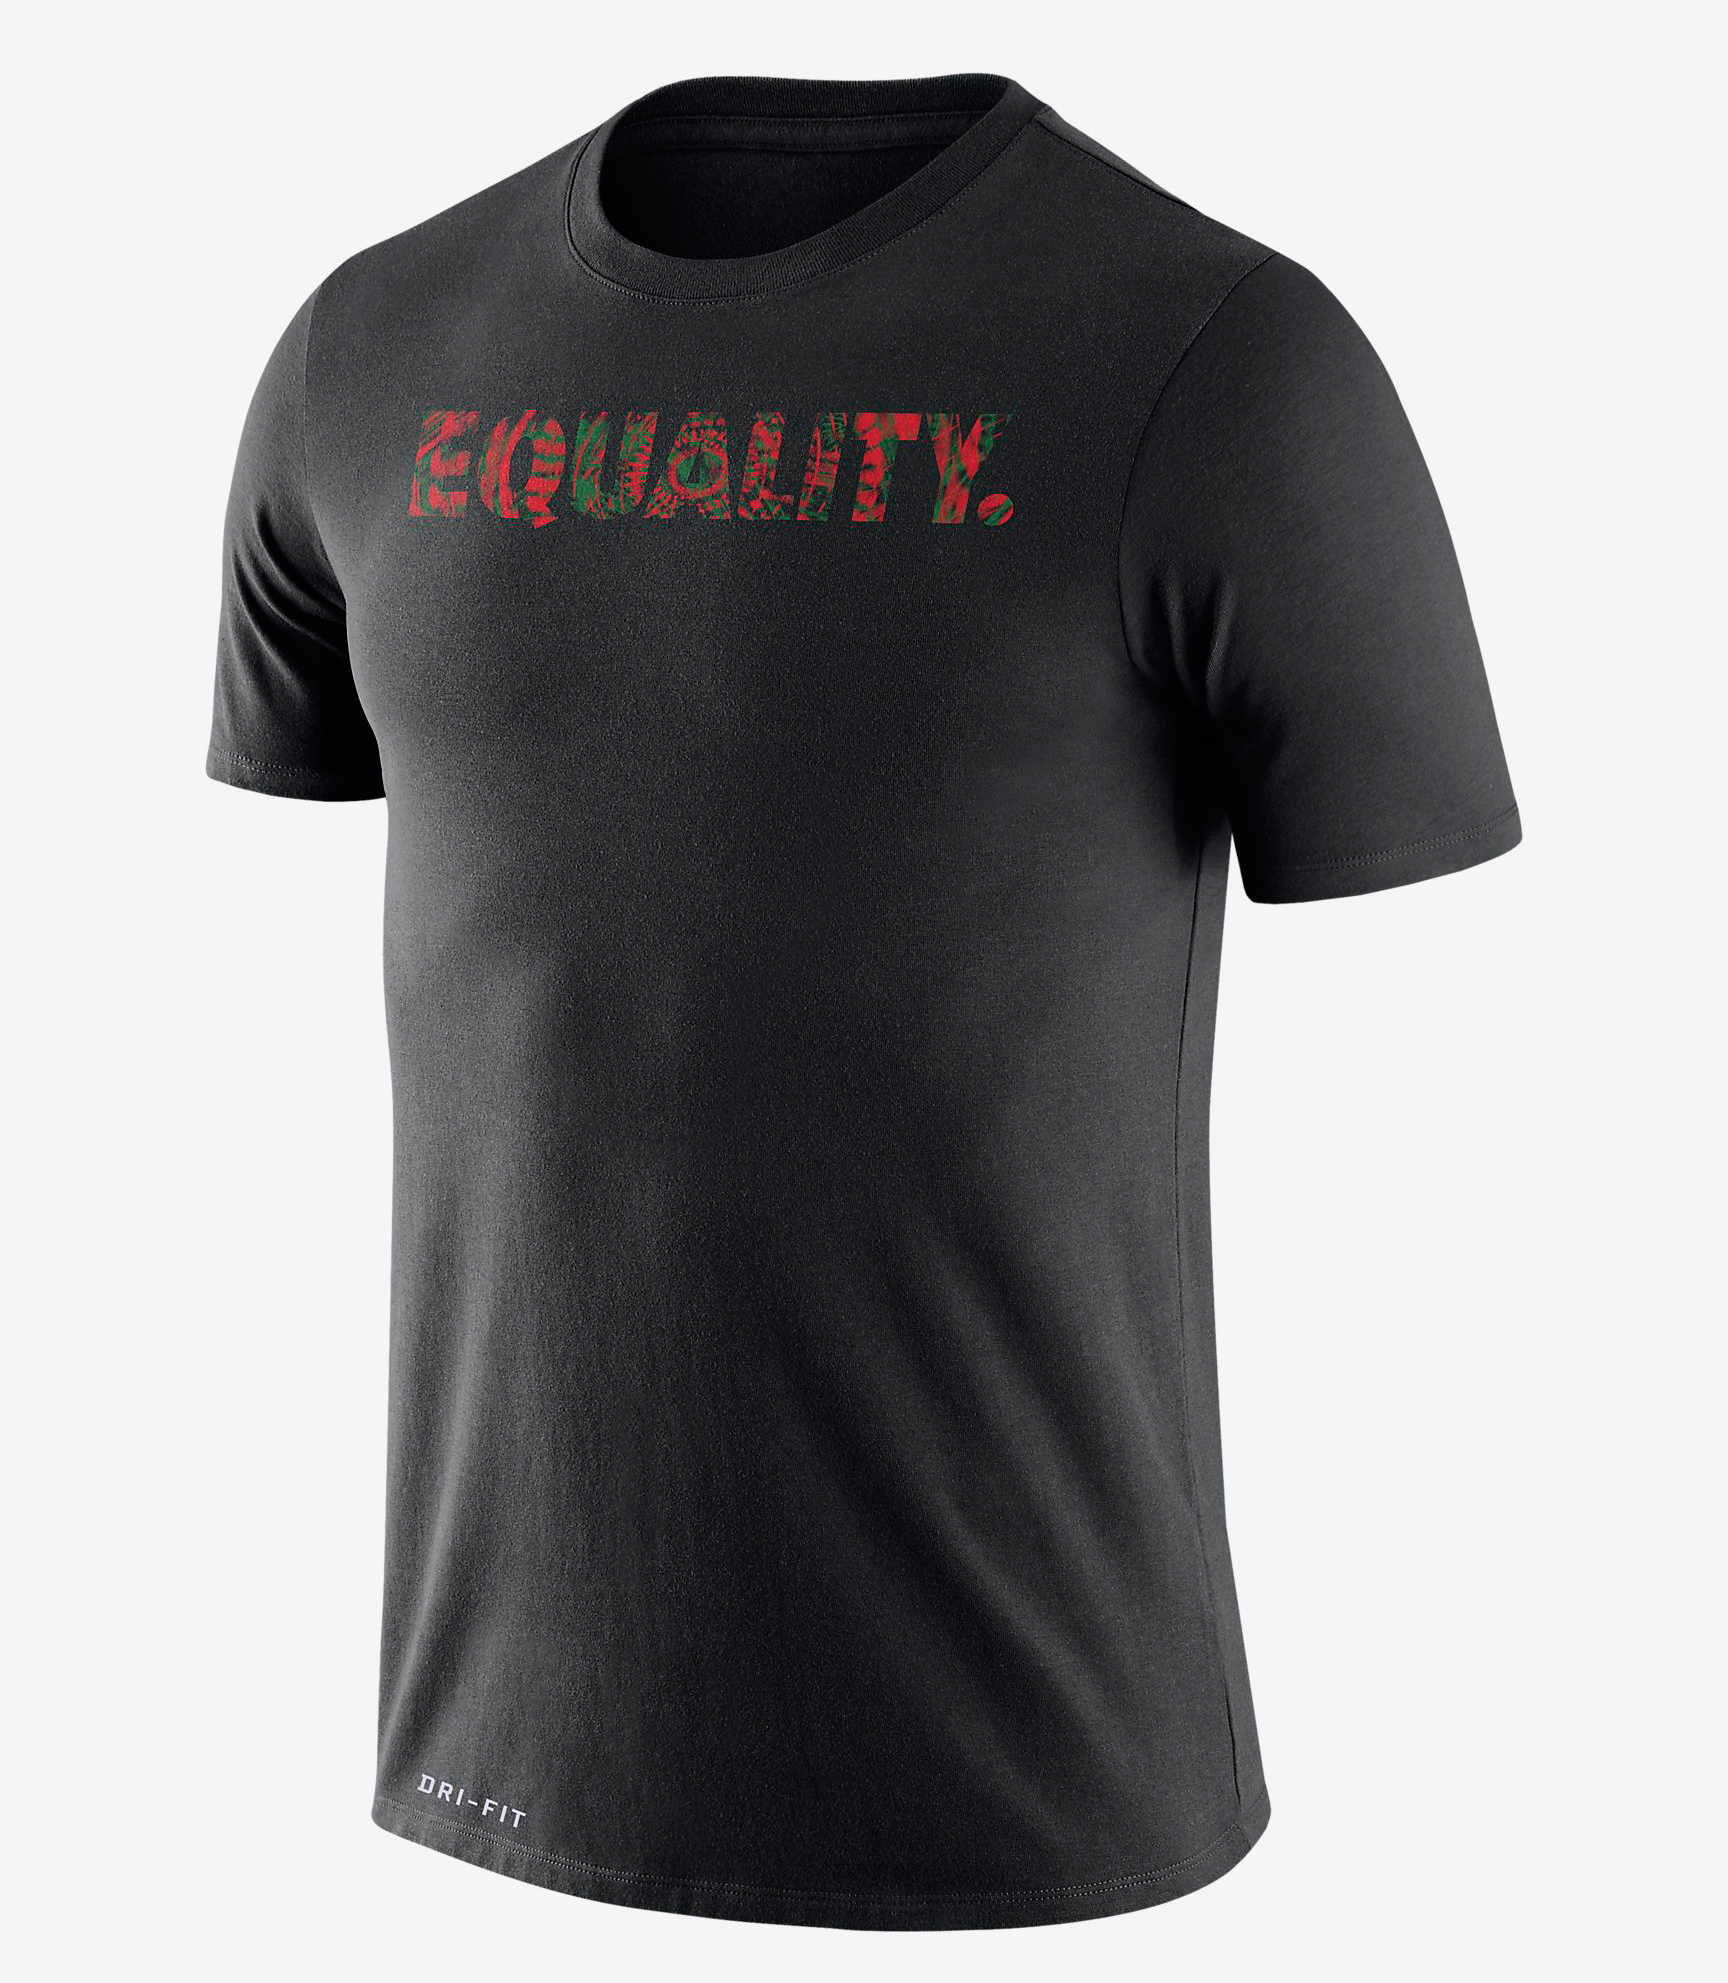 Nike BHM EQUALITY Shirt | SportFits.com